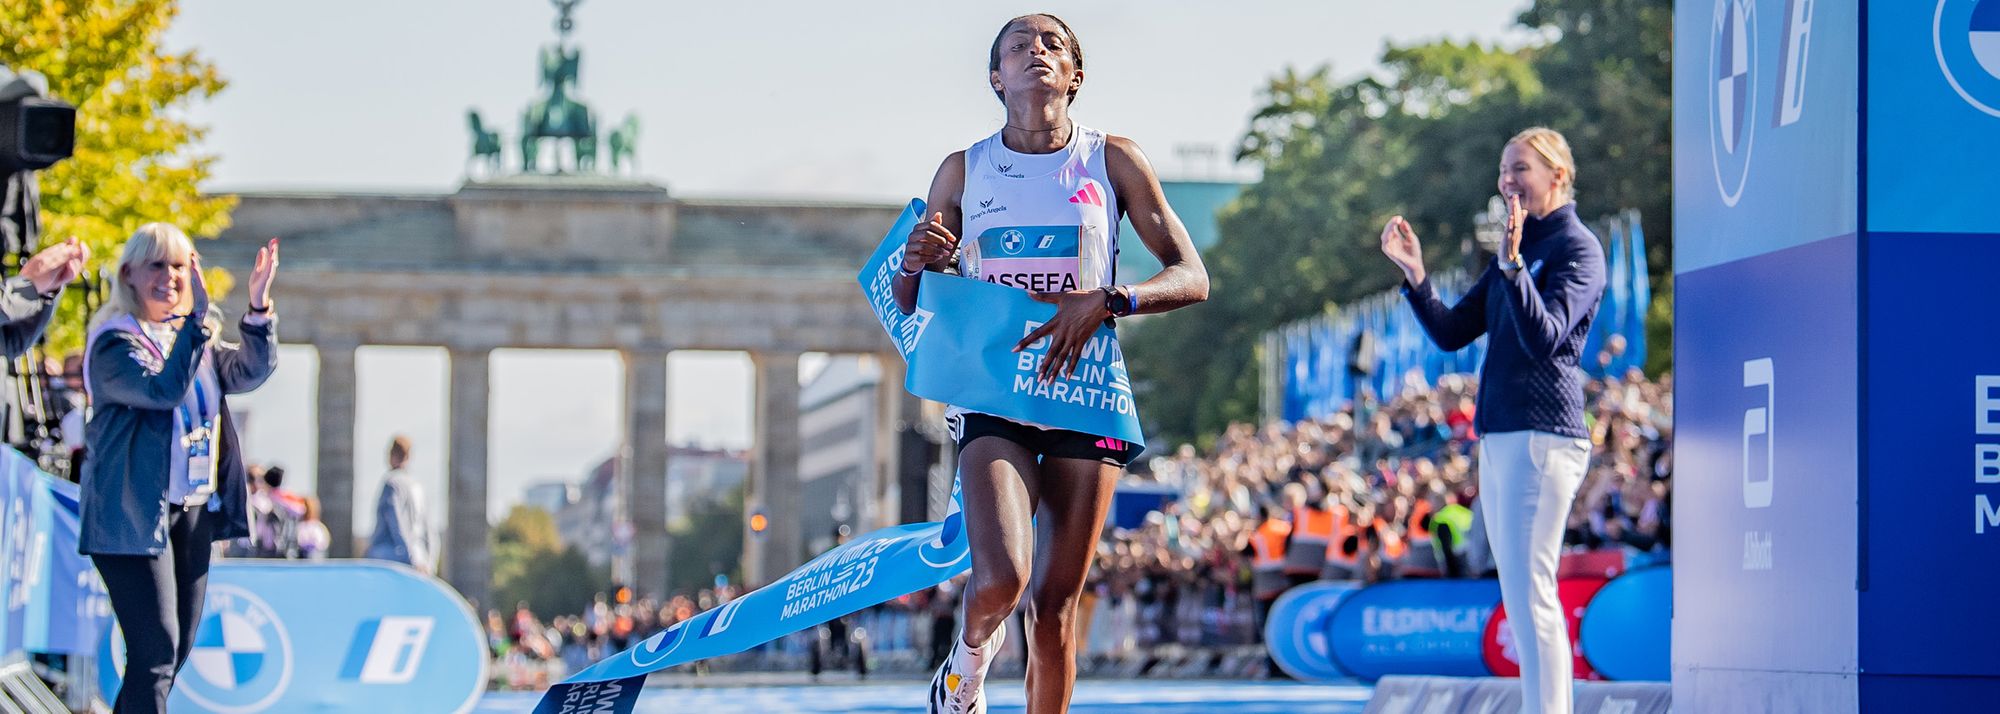 Tigist Assefa’s world marathon record of 2:11:53 set in Berlin last year has been ratified.